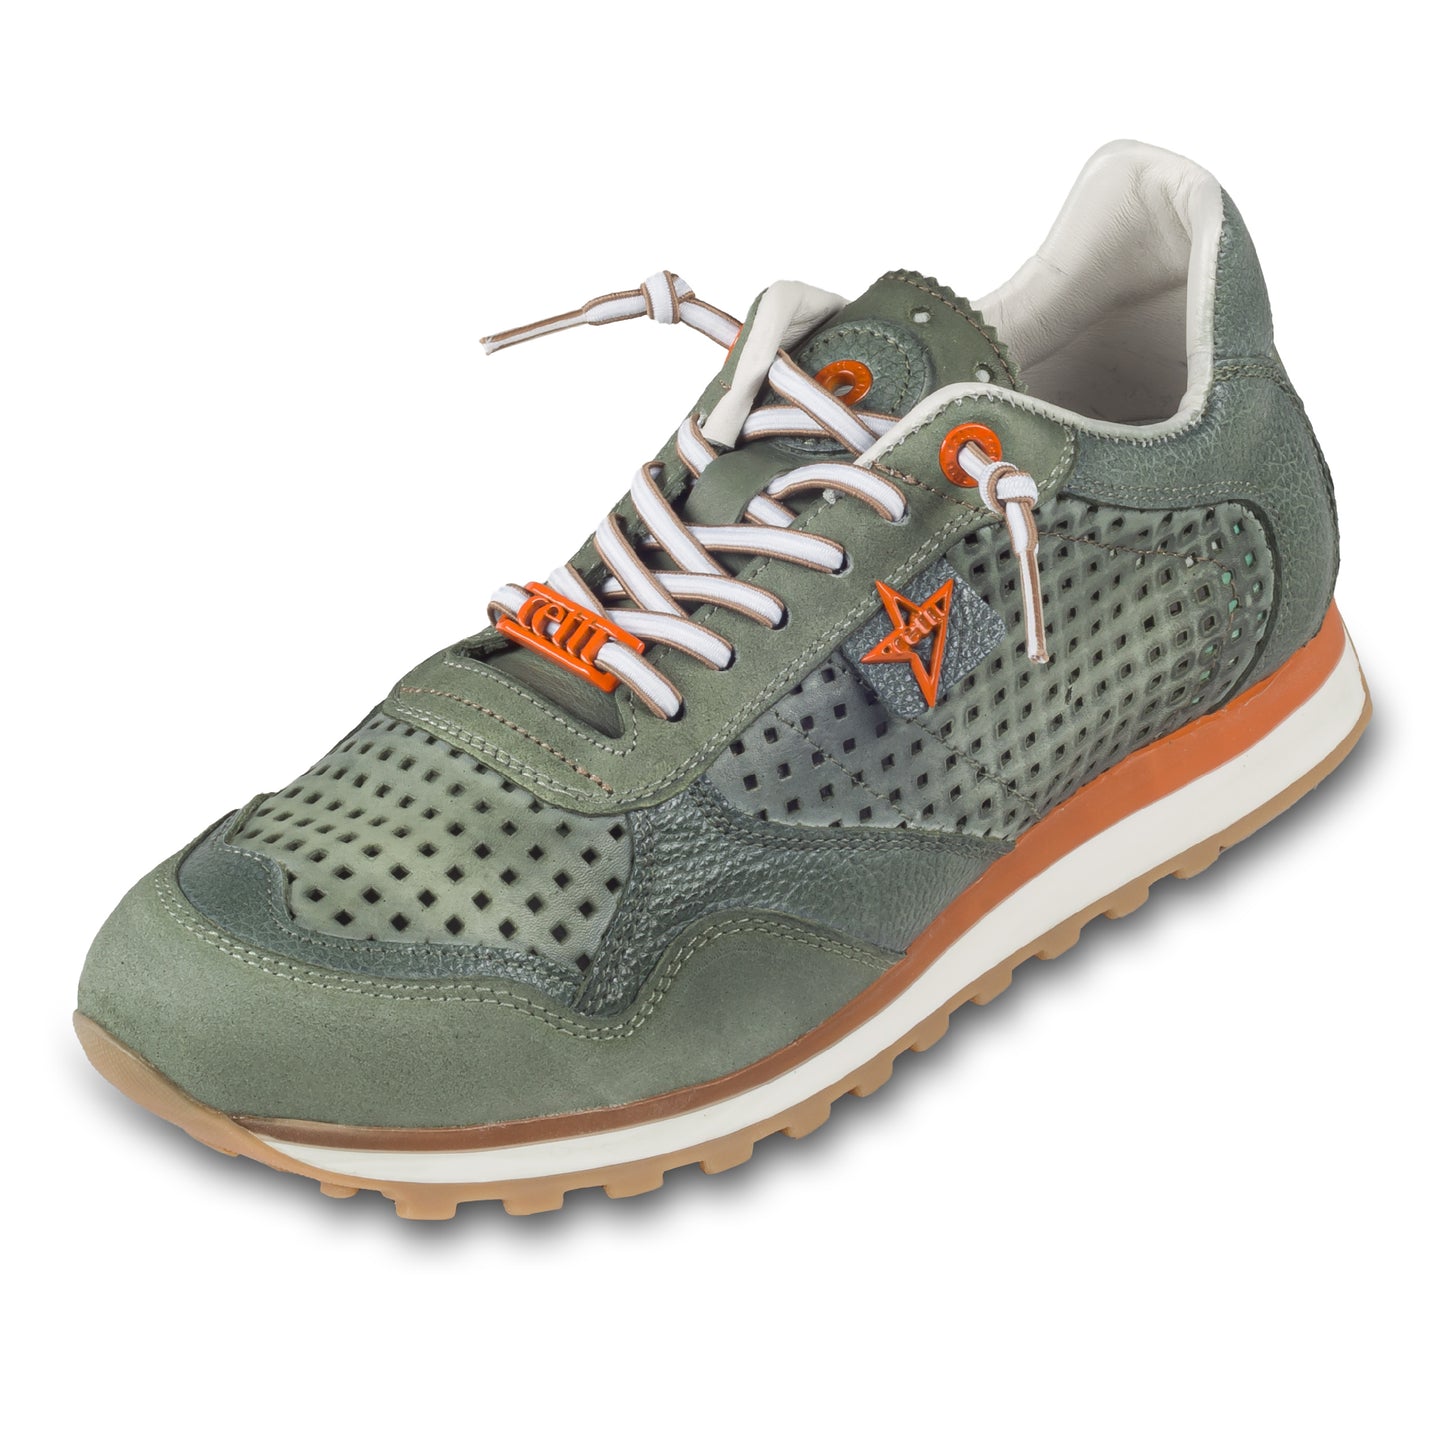 CETTI Herren Leder Sneaker, Modell „C848“ in grün (used tin kombat), Made in Spain. Ansicht der Ferse und Sohlenunterseite. Schräge Ansicht linker Schuh.